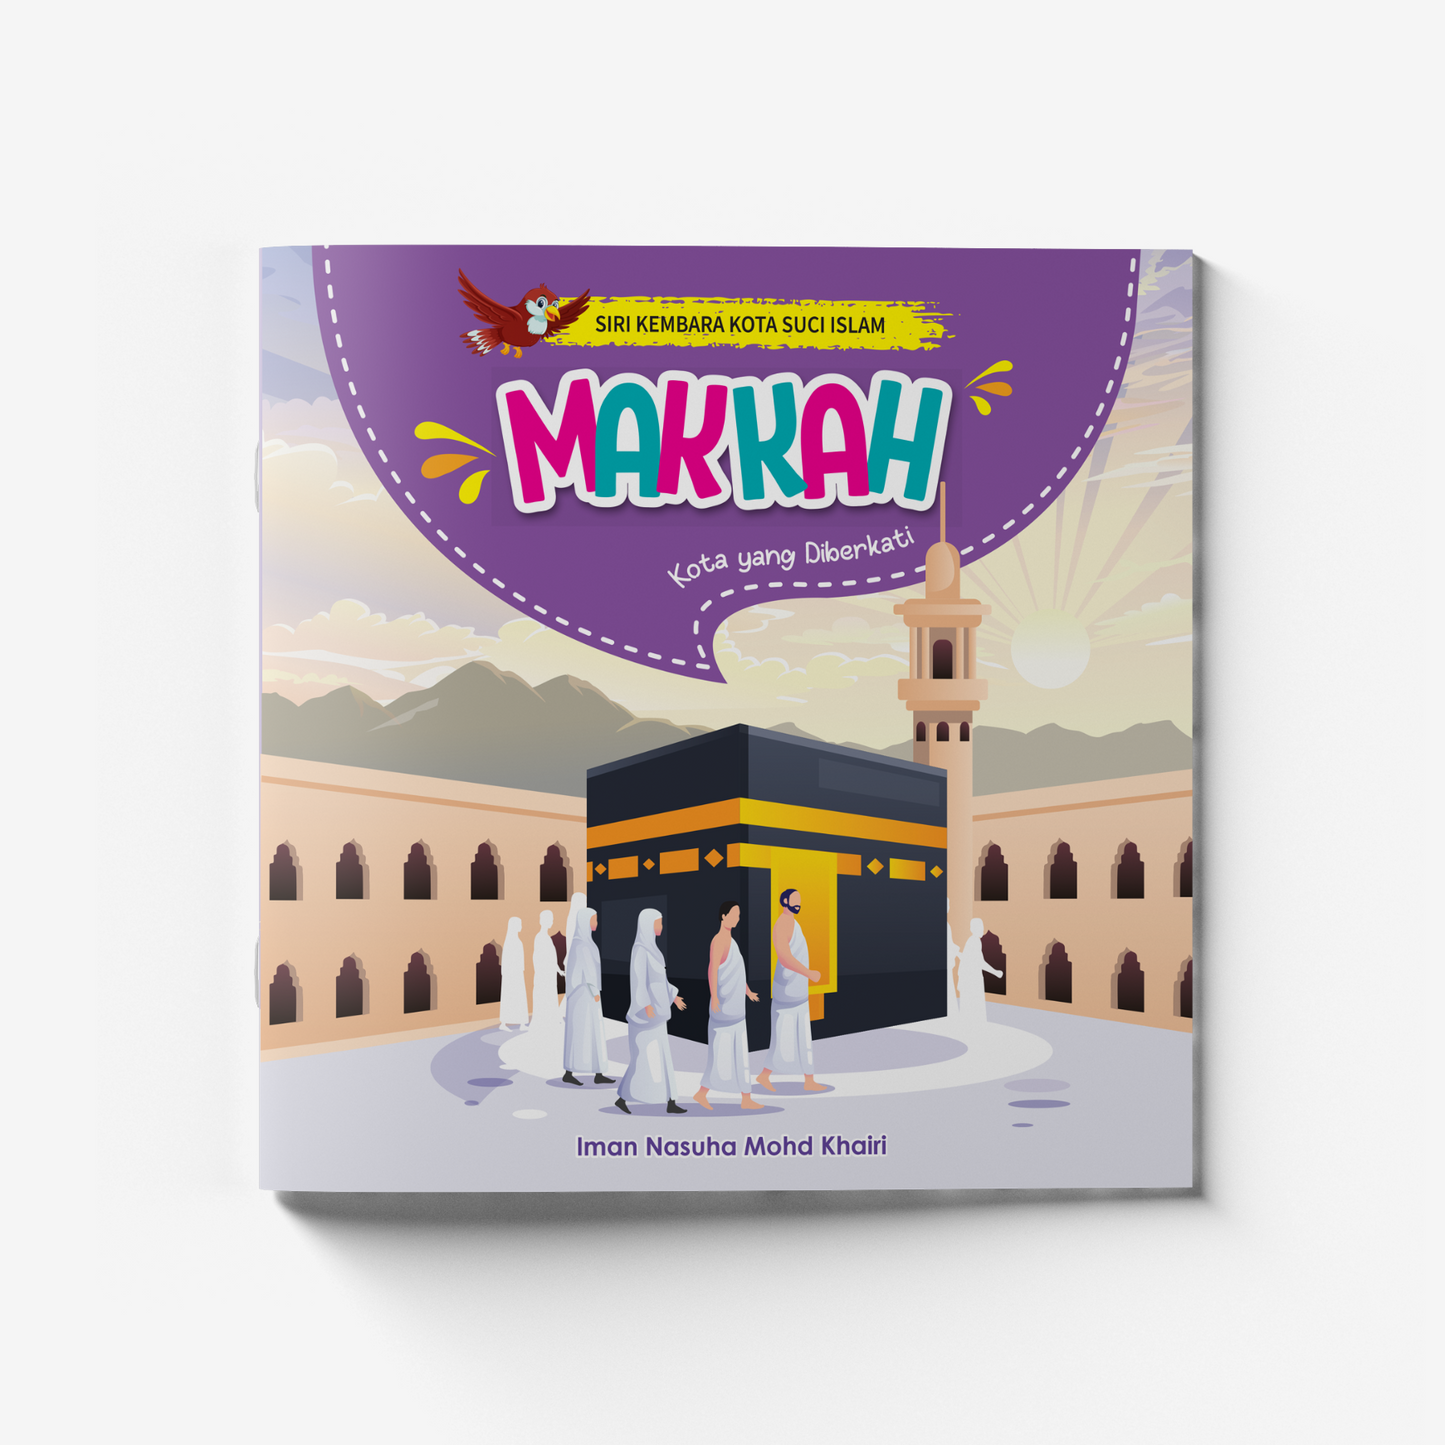 Siri Kembara Kota Suci Islam - Makkah